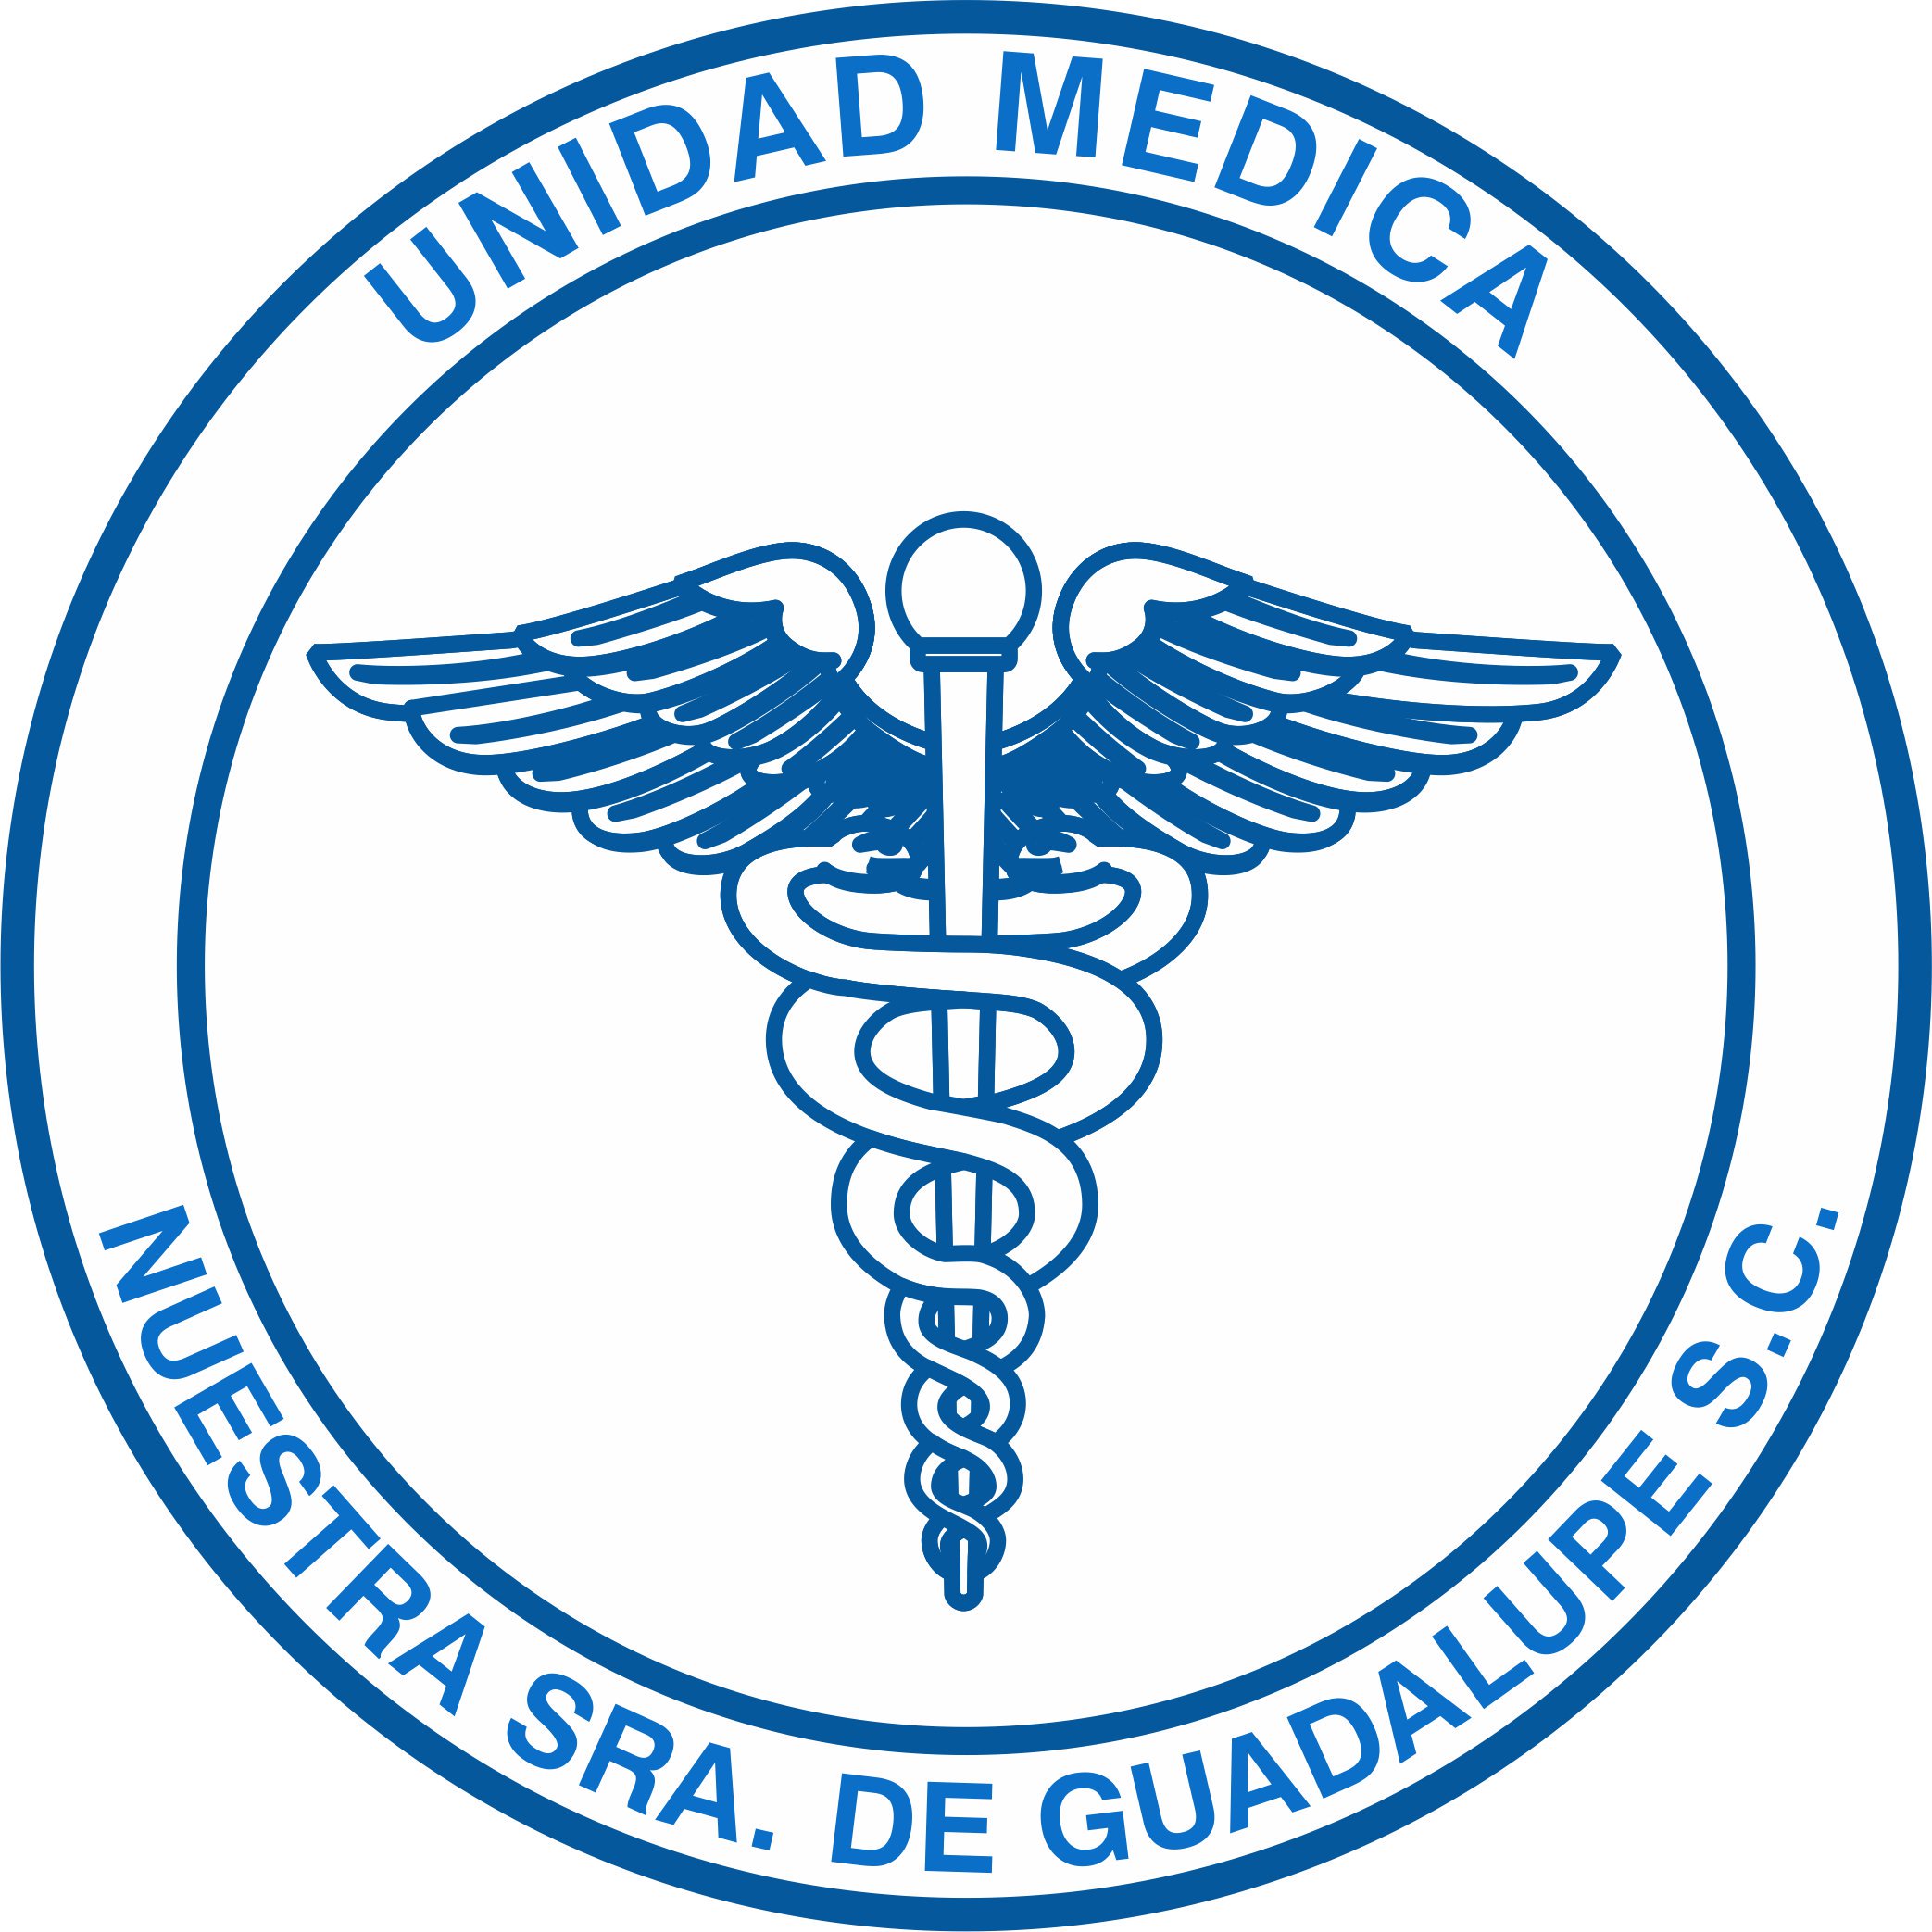 Unidad Mèdica Nuestra Señora de Guadalupe S.C.